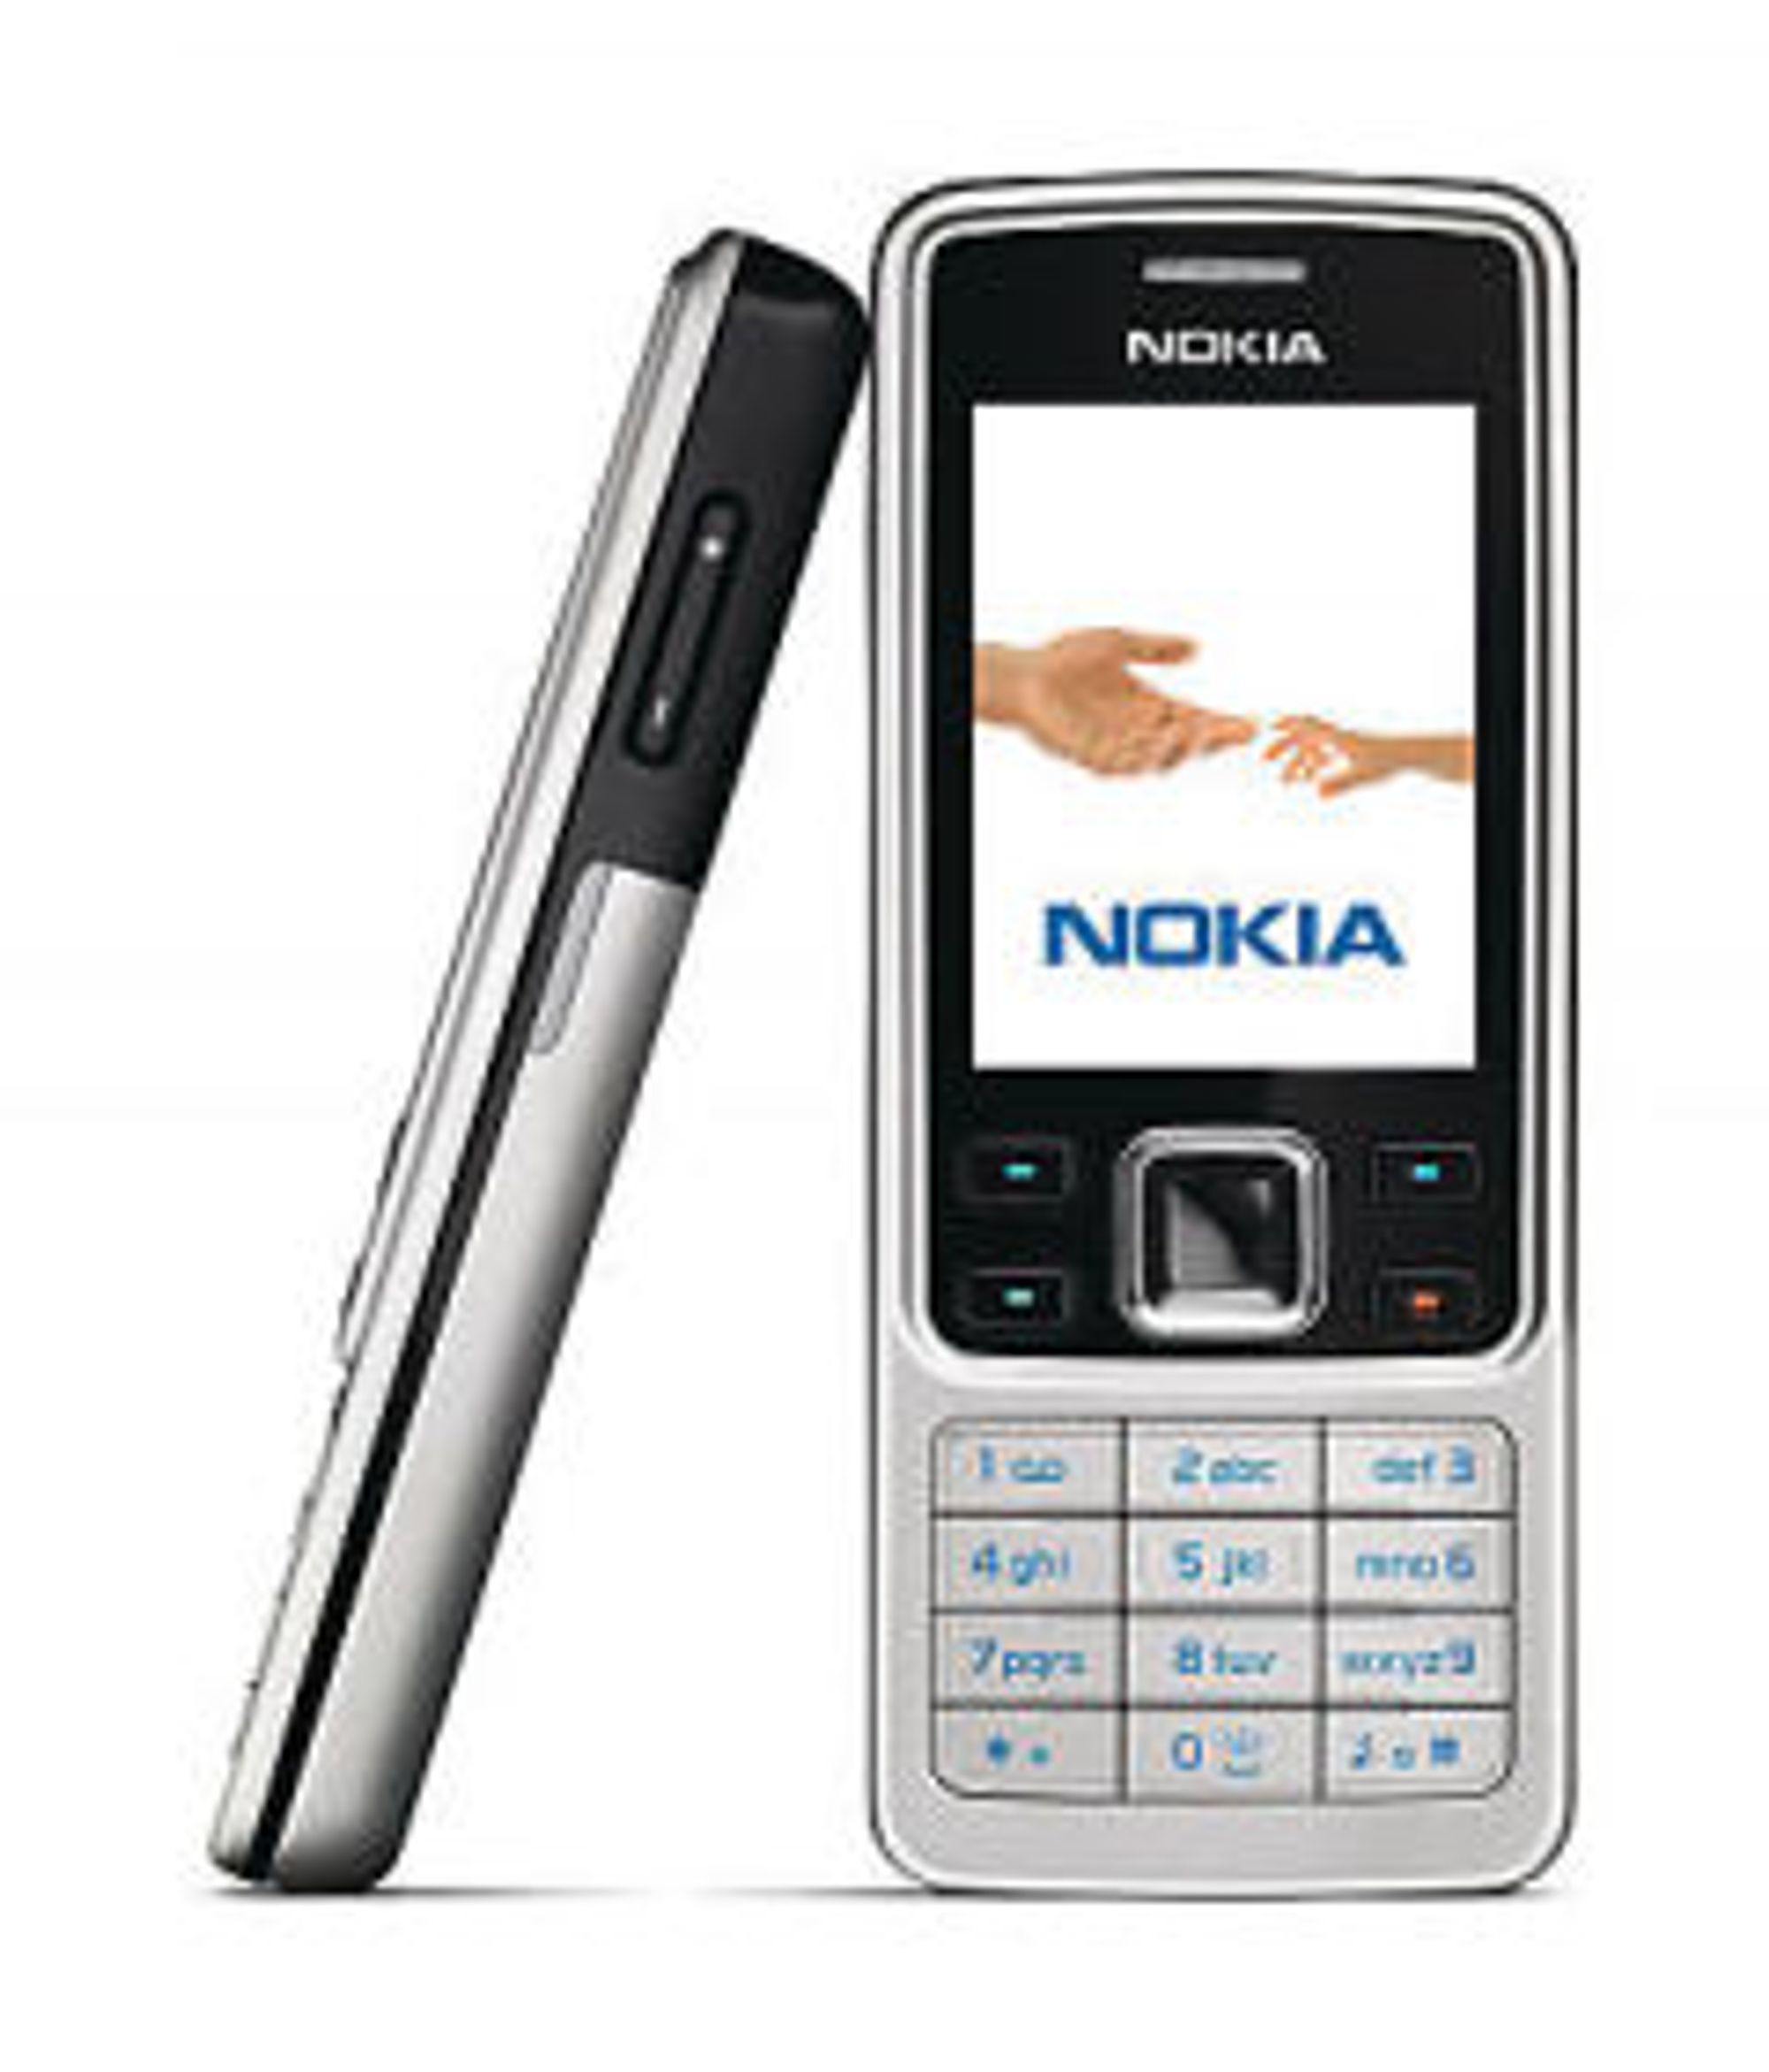   Nokias fremtid?&amp;nbsp; Nokia satser p&amp;aring; &amp;aring; videref&amp;oslash;re operativsystemet Series30 og Series40 i billigtelefonene fremover. Det er operativsystemet Nokia hadde i ermet ved &amp;aring;rtusenskiftet, f&amp;oslash;r Symbian ble introdusert. Det gamle operativsystemet vil f&amp;aring; en ansiktsl&amp;oslash;ftning blant annet gjennom touch-grensesnittet som nylig ble introdusert i den nye Asha-telefonen.&amp;nbsp; 